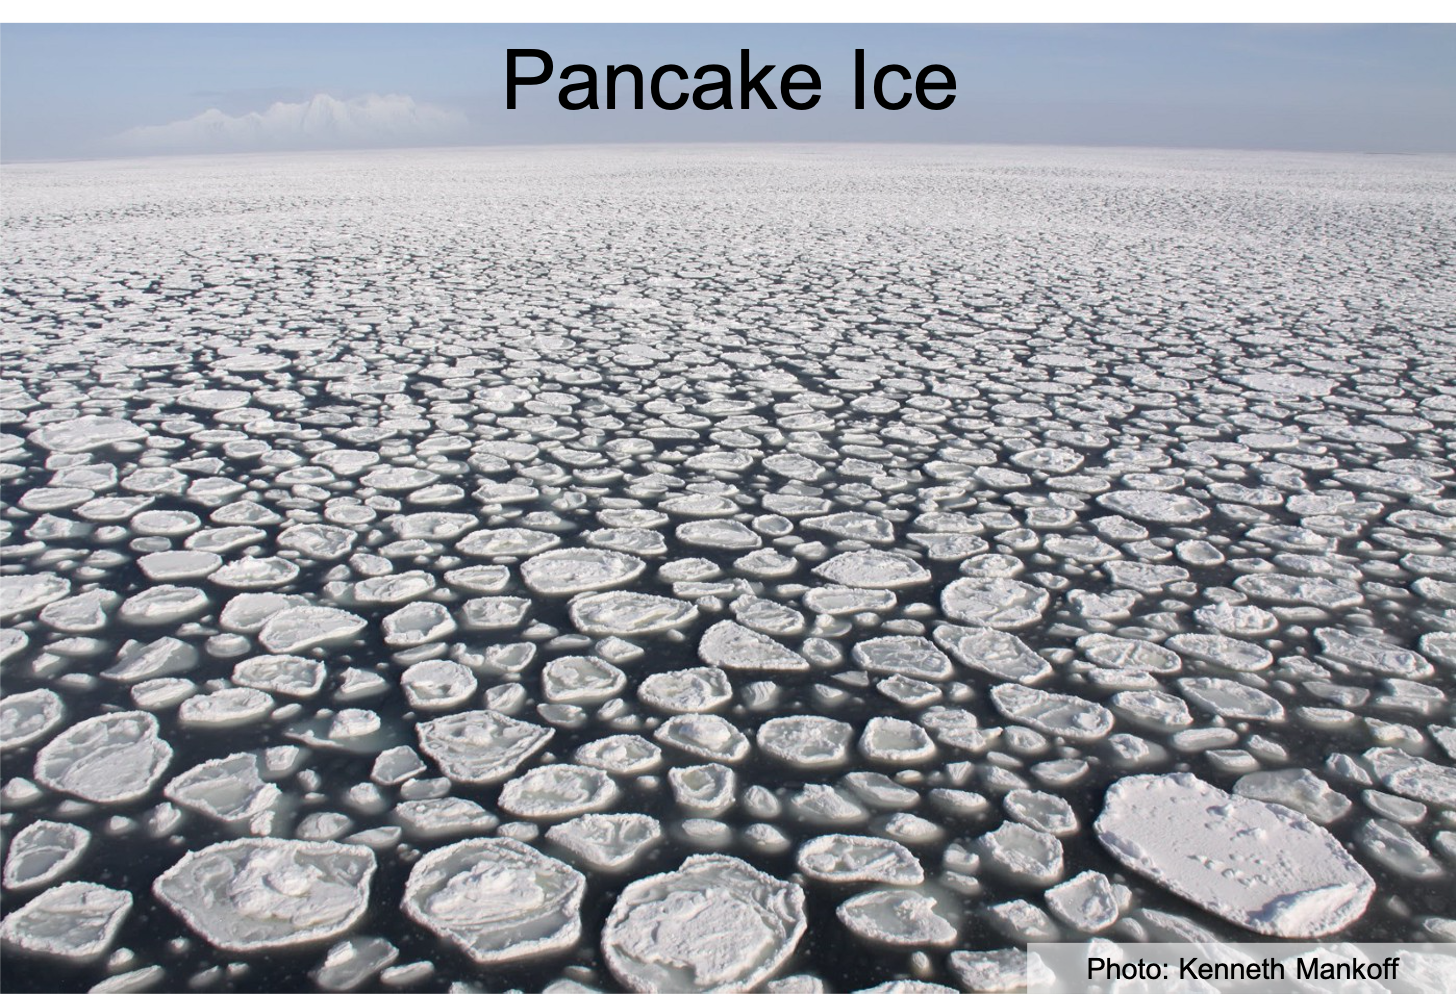 Pancake ice